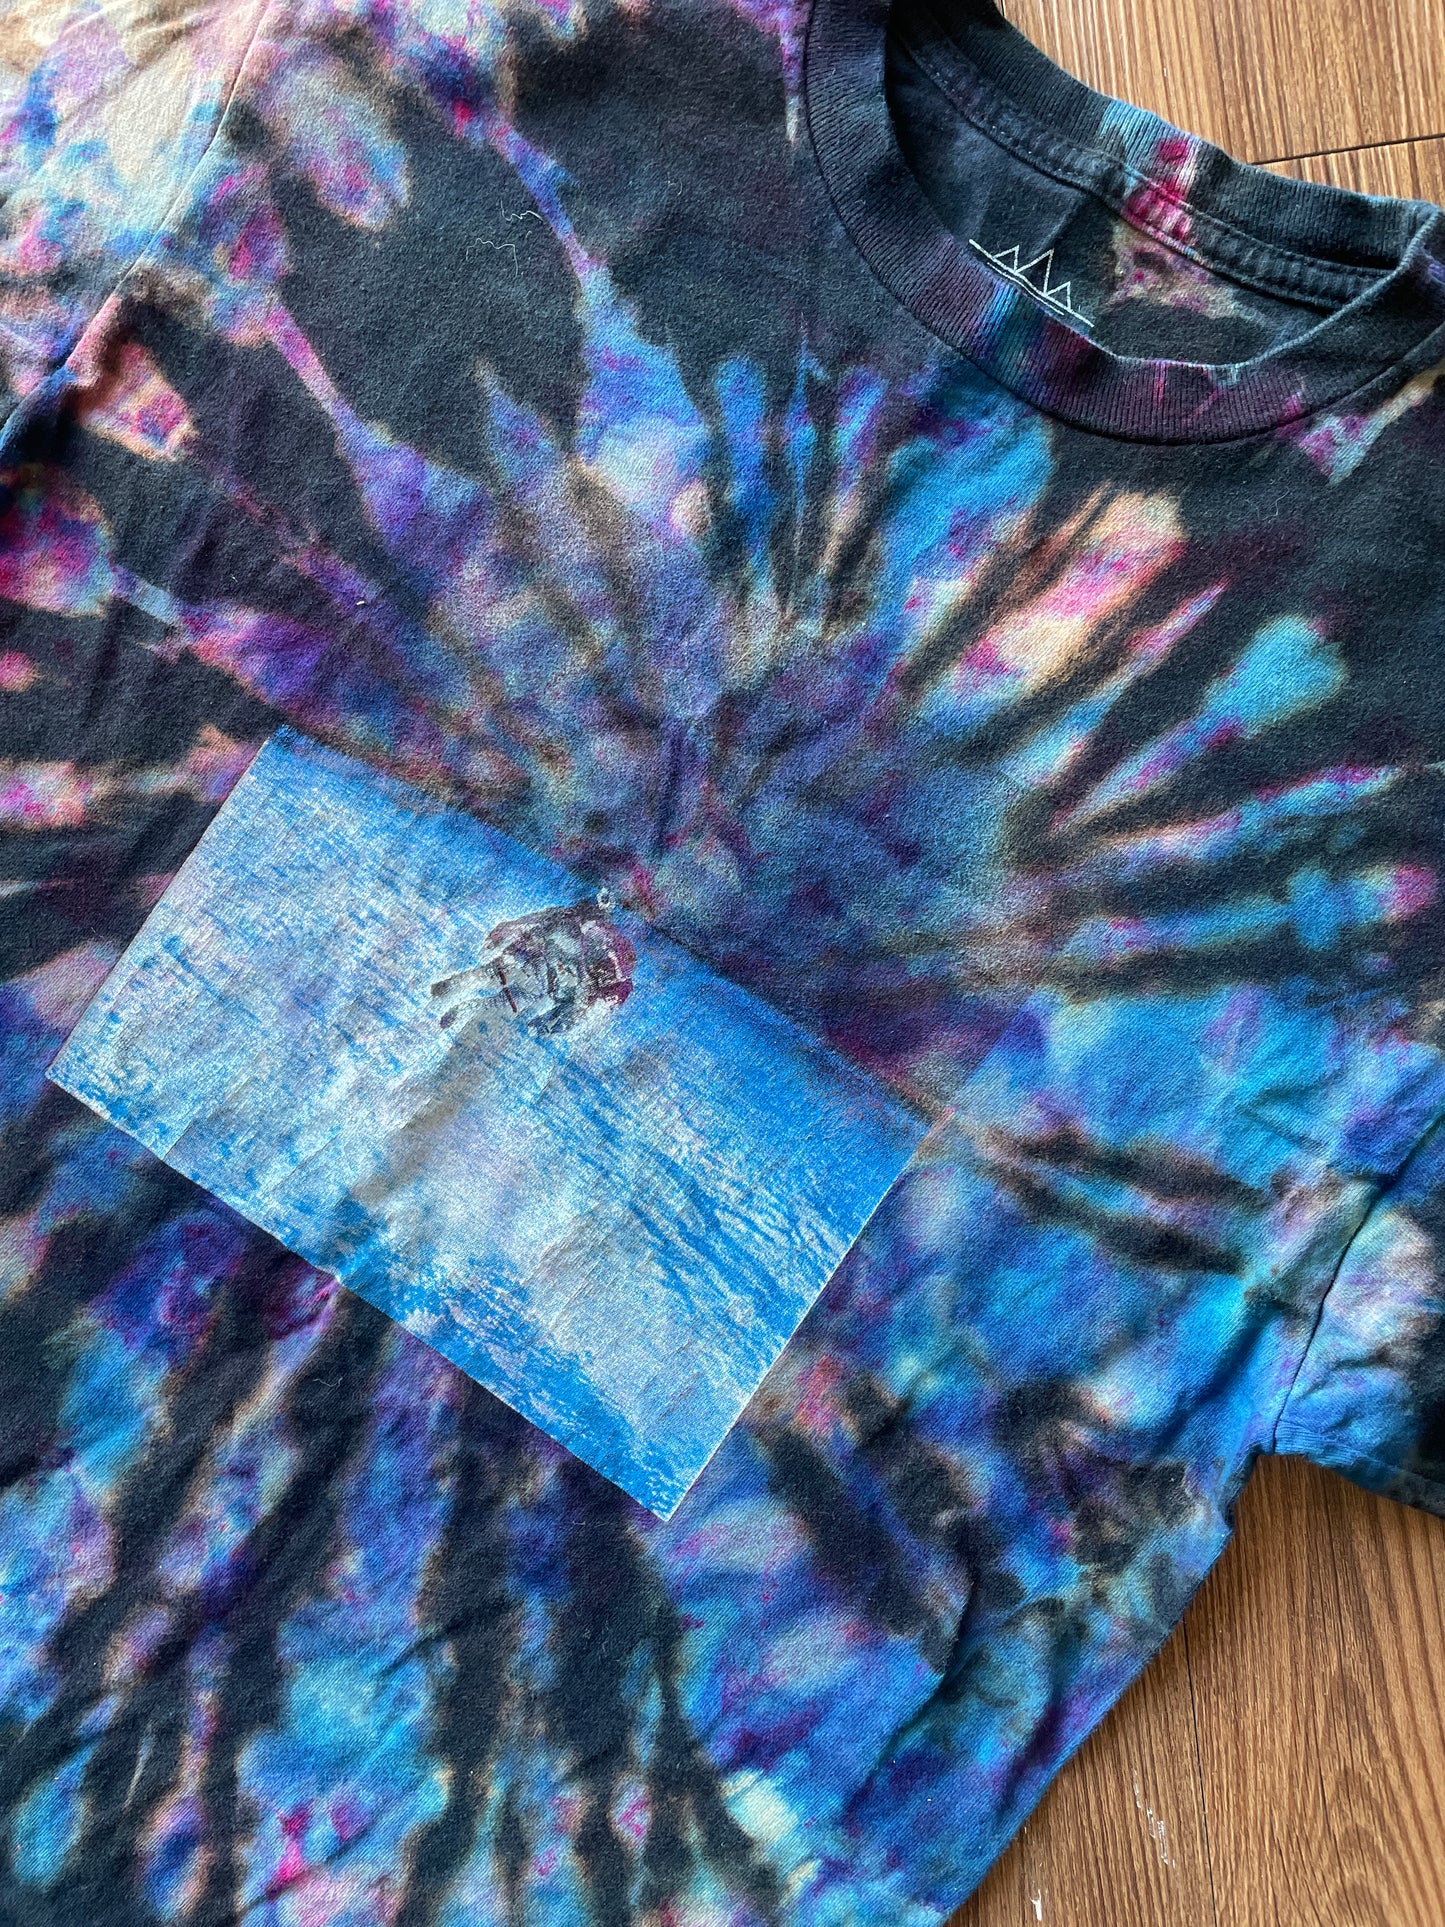 MEDIUM Men’s Astronaut Lost in Space Tie Dye T-Shirt | Galaxy Reverse Tie Dye Short Sleeve